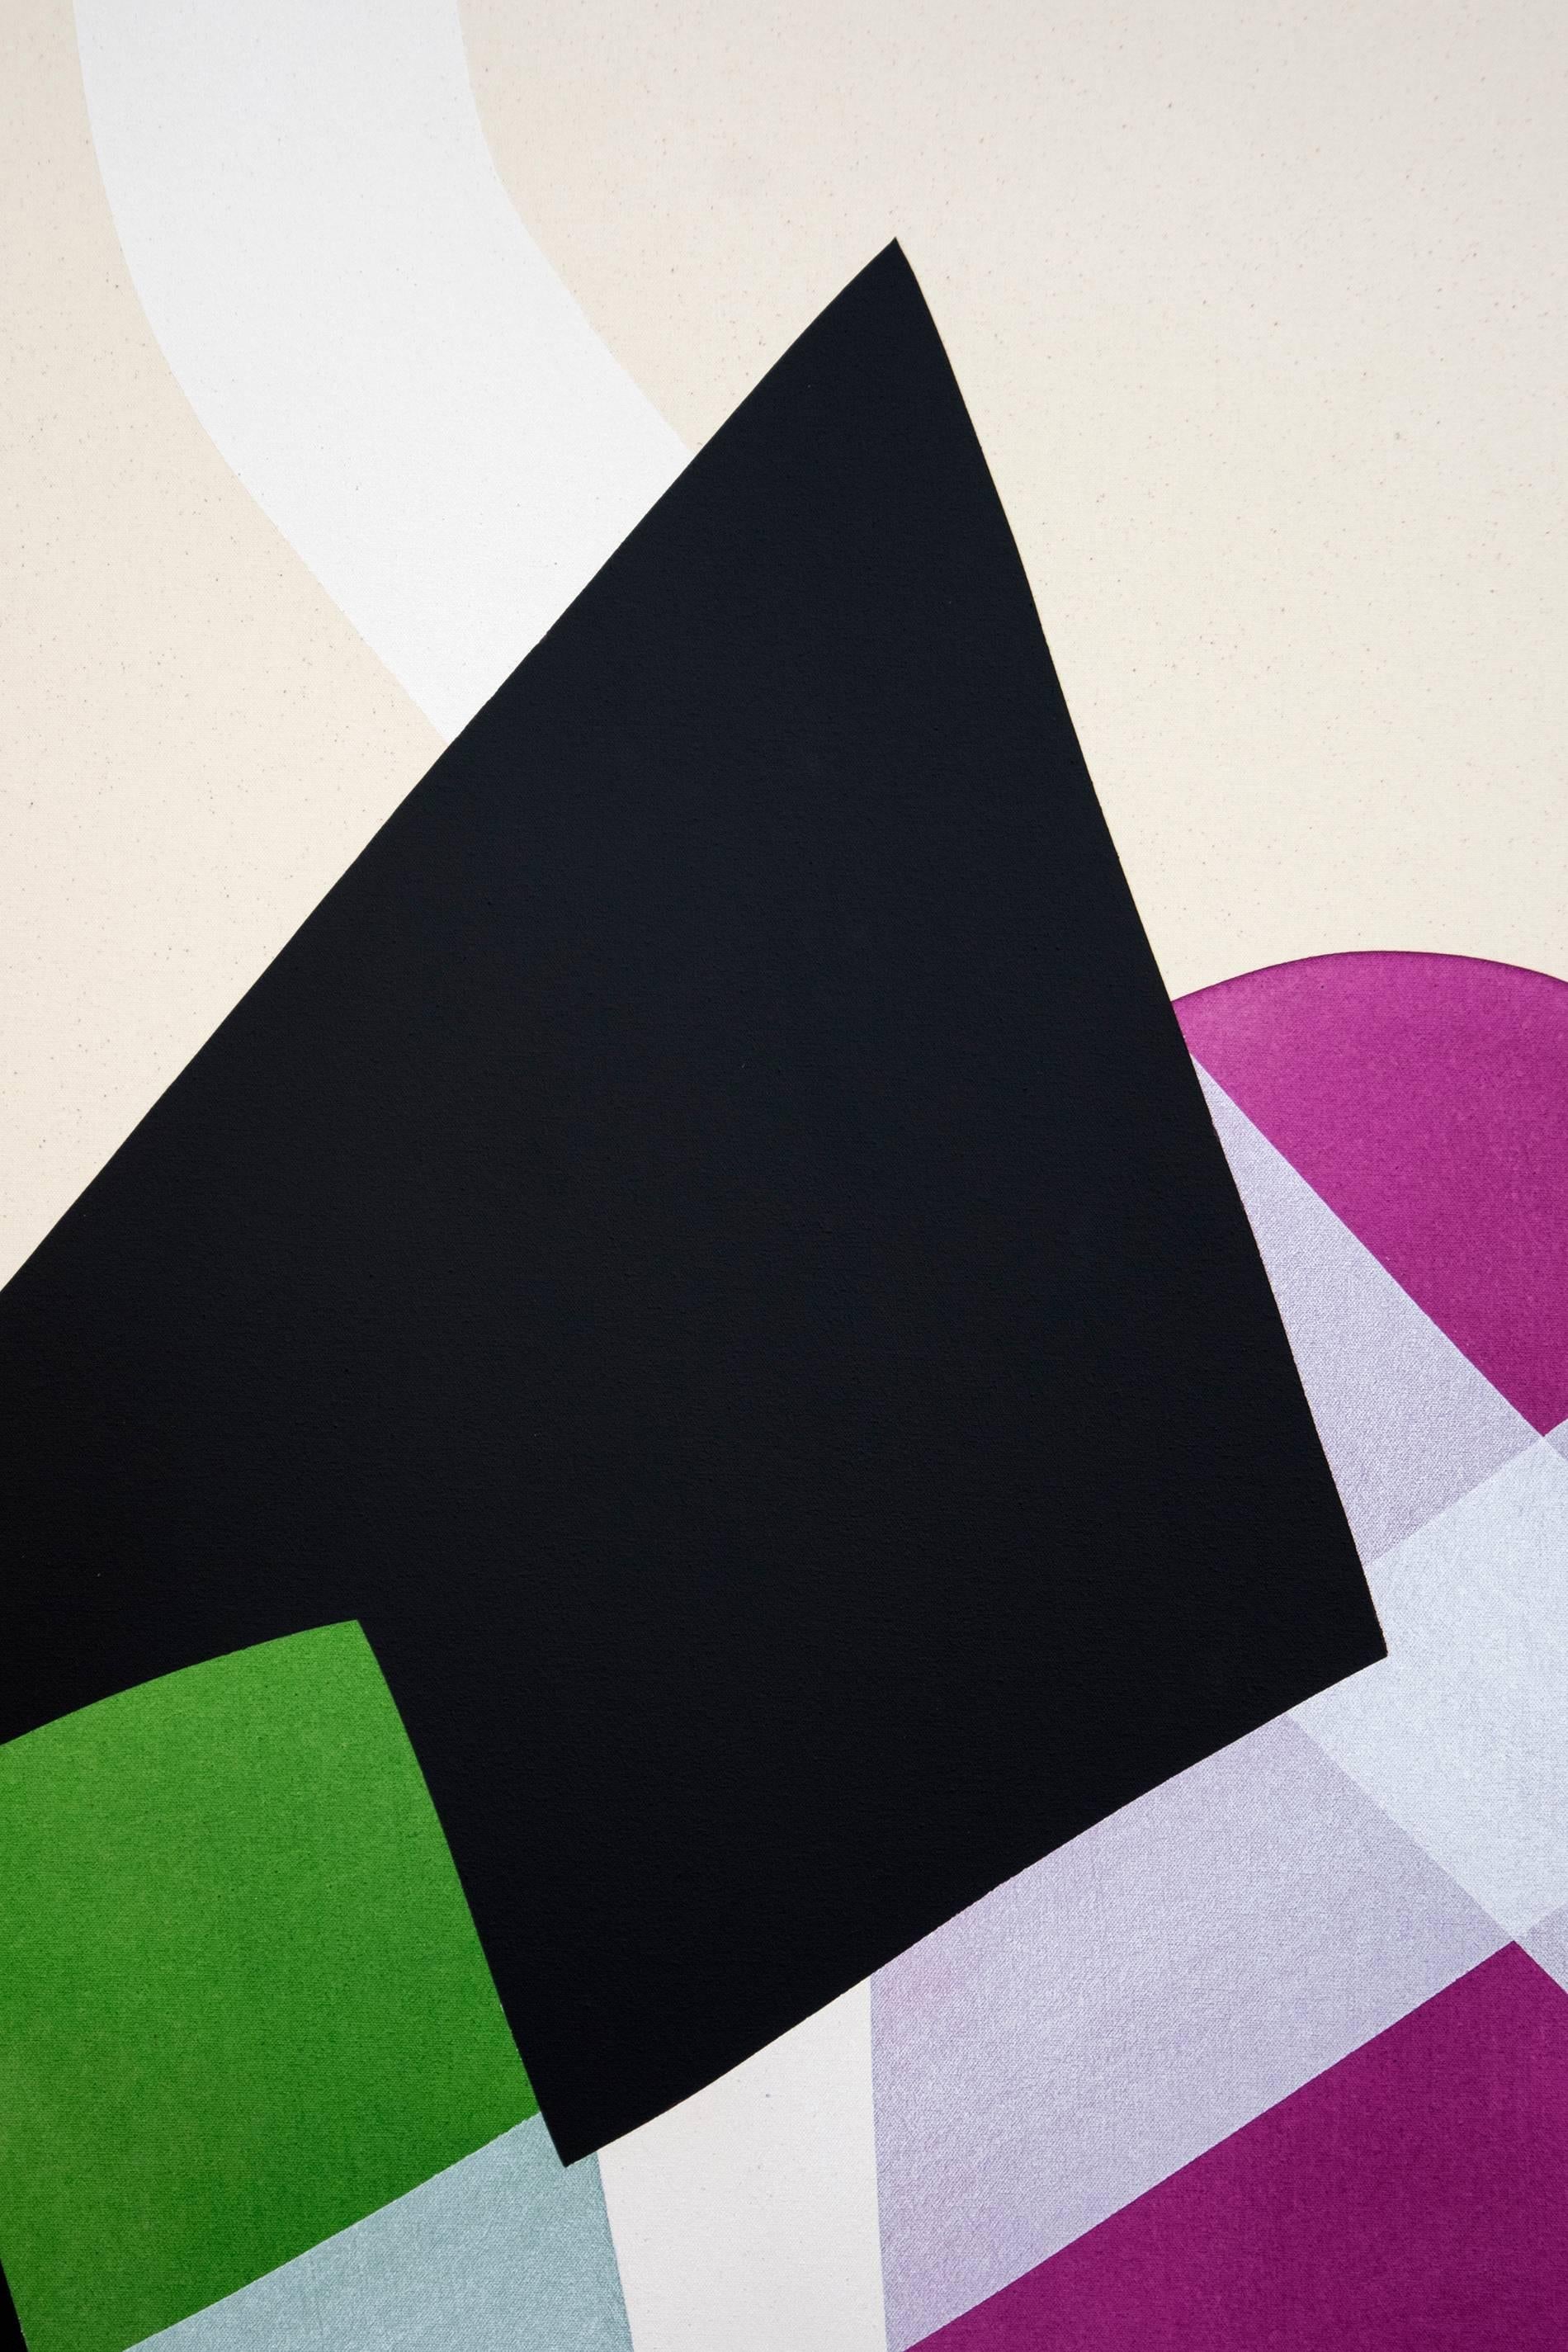 Dieses grafische und kühne Gemälde, das zwei Stühle auf einem Teppich zeigt, stammt von Aron Hill. Bekannt für seine minimalistischen Formen und den großzügigen Einsatz lebendiger Farben, zeigt dieses Werk flache, runde Formen in Grün, Violett,